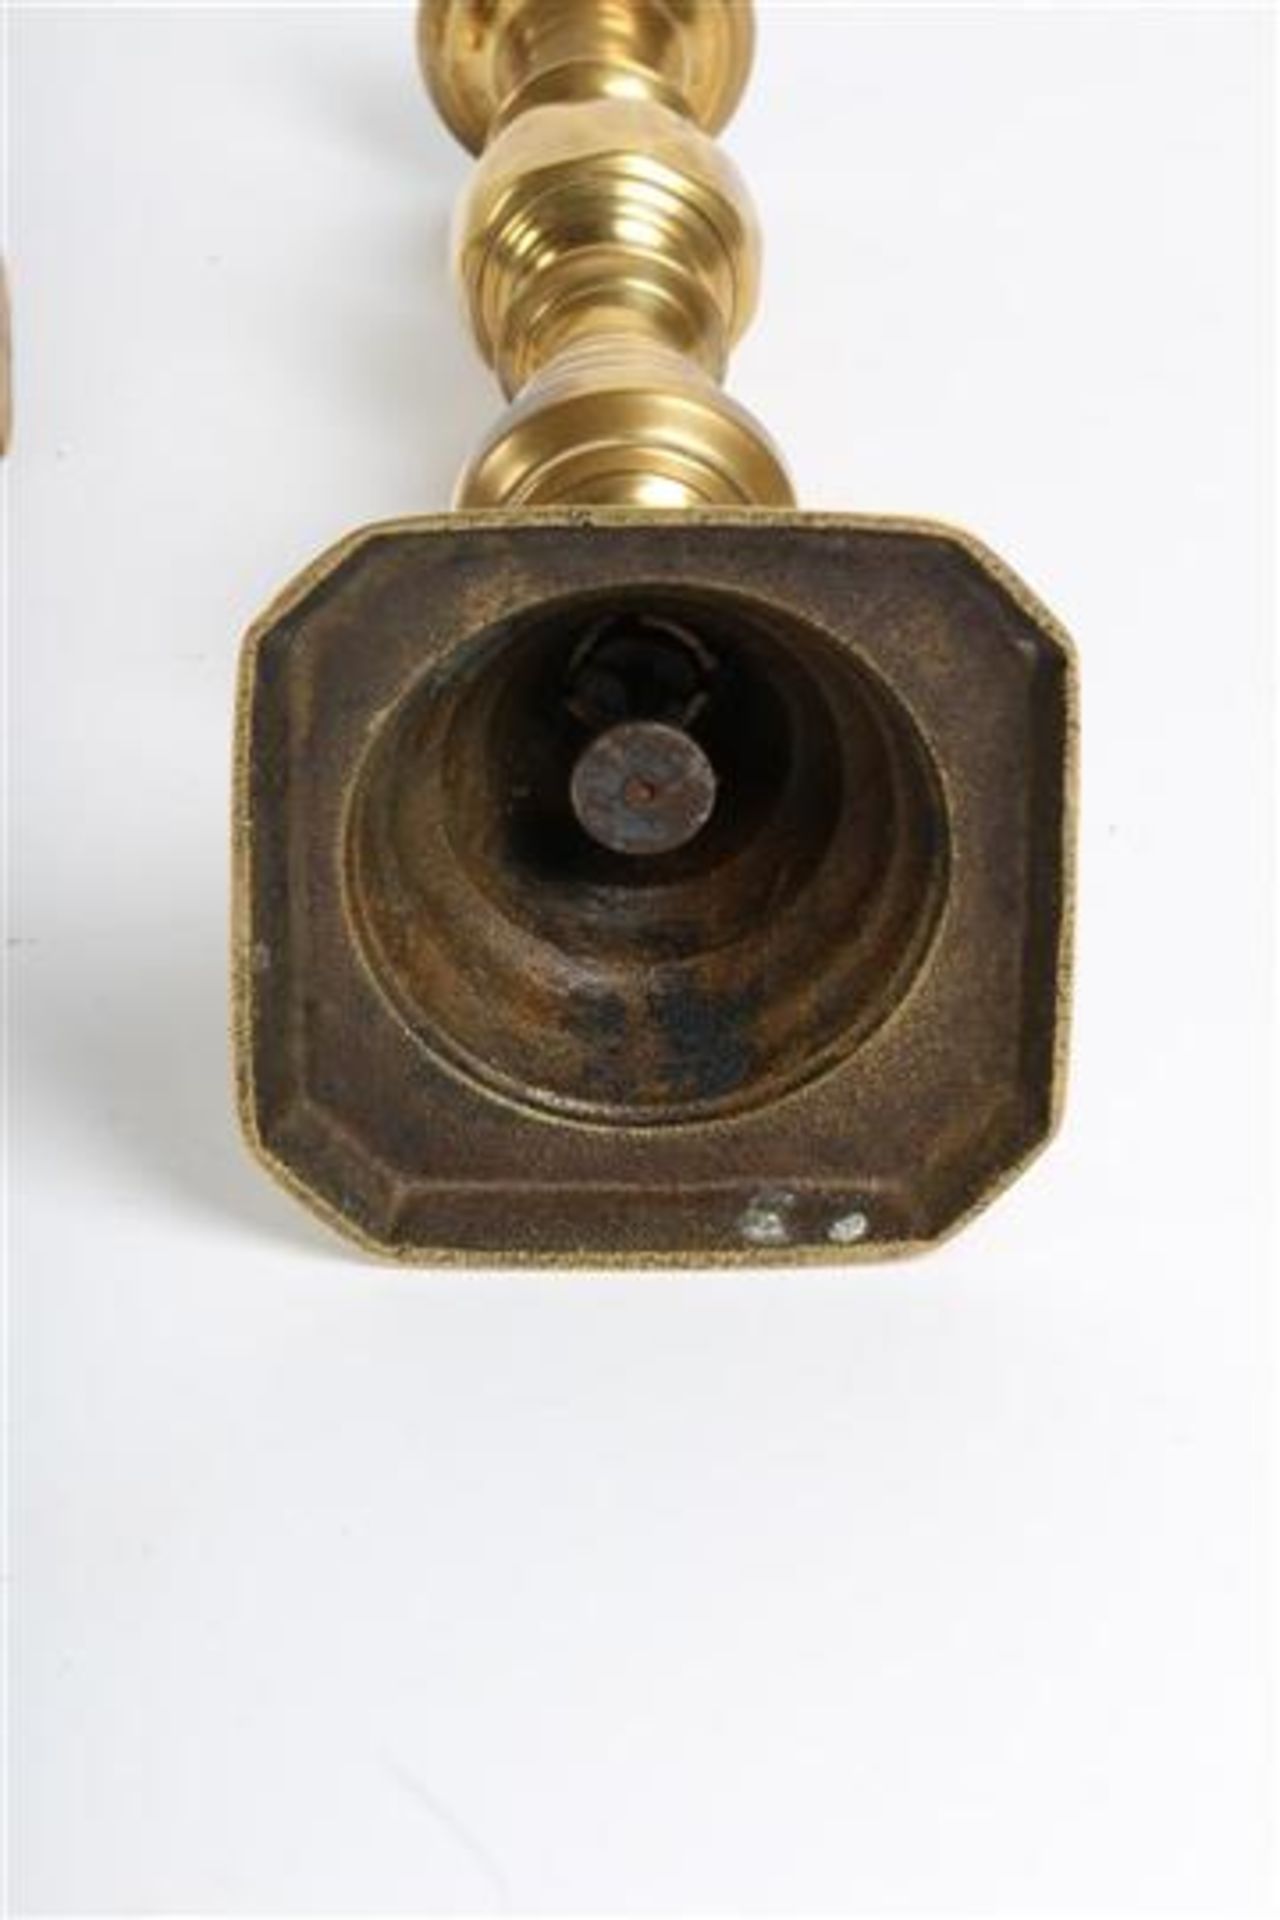 Stel koperen kandelaars, Engeland, 19e eeuw. H: 28 cm. - Bild 2 aus 3